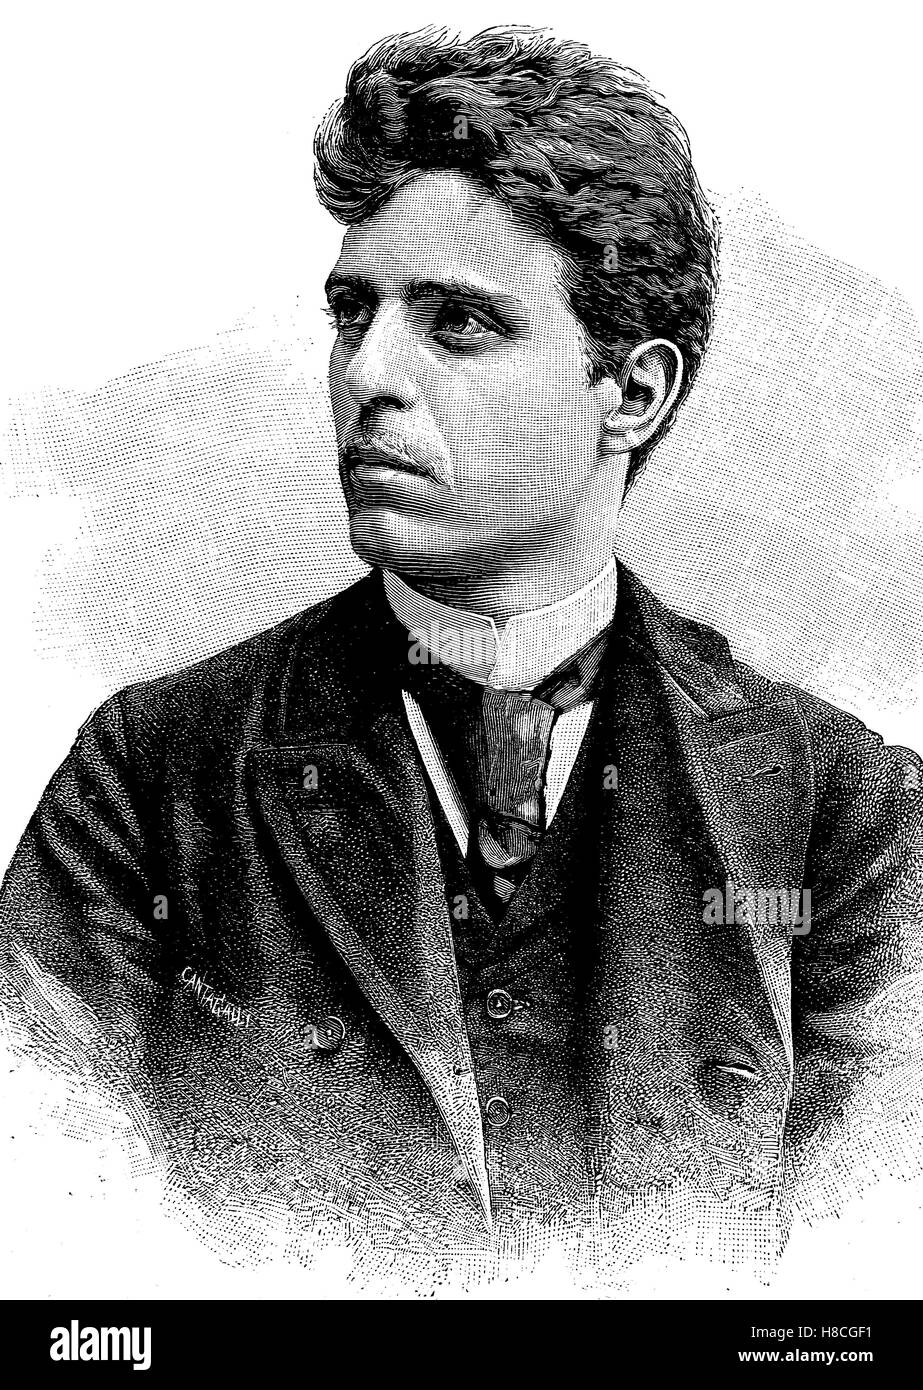 Pietro Antonio Stefano Mascagni ; 7 Décembre 1863 - 2 août 1945, était un compositeur italien surtout connu pour ses opéras, gravure sur bois de 1892 Banque D'Images